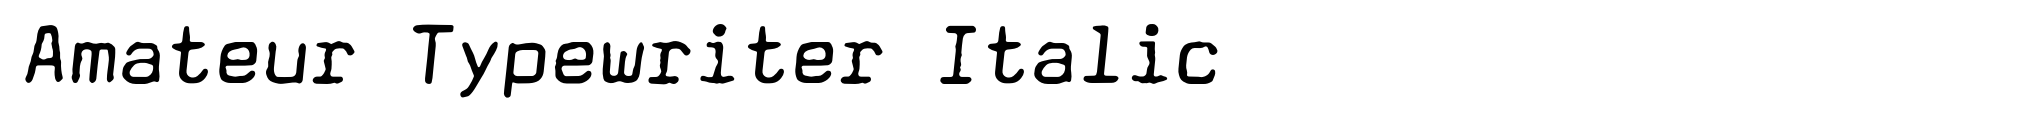 Amateur Typewriter Italic image